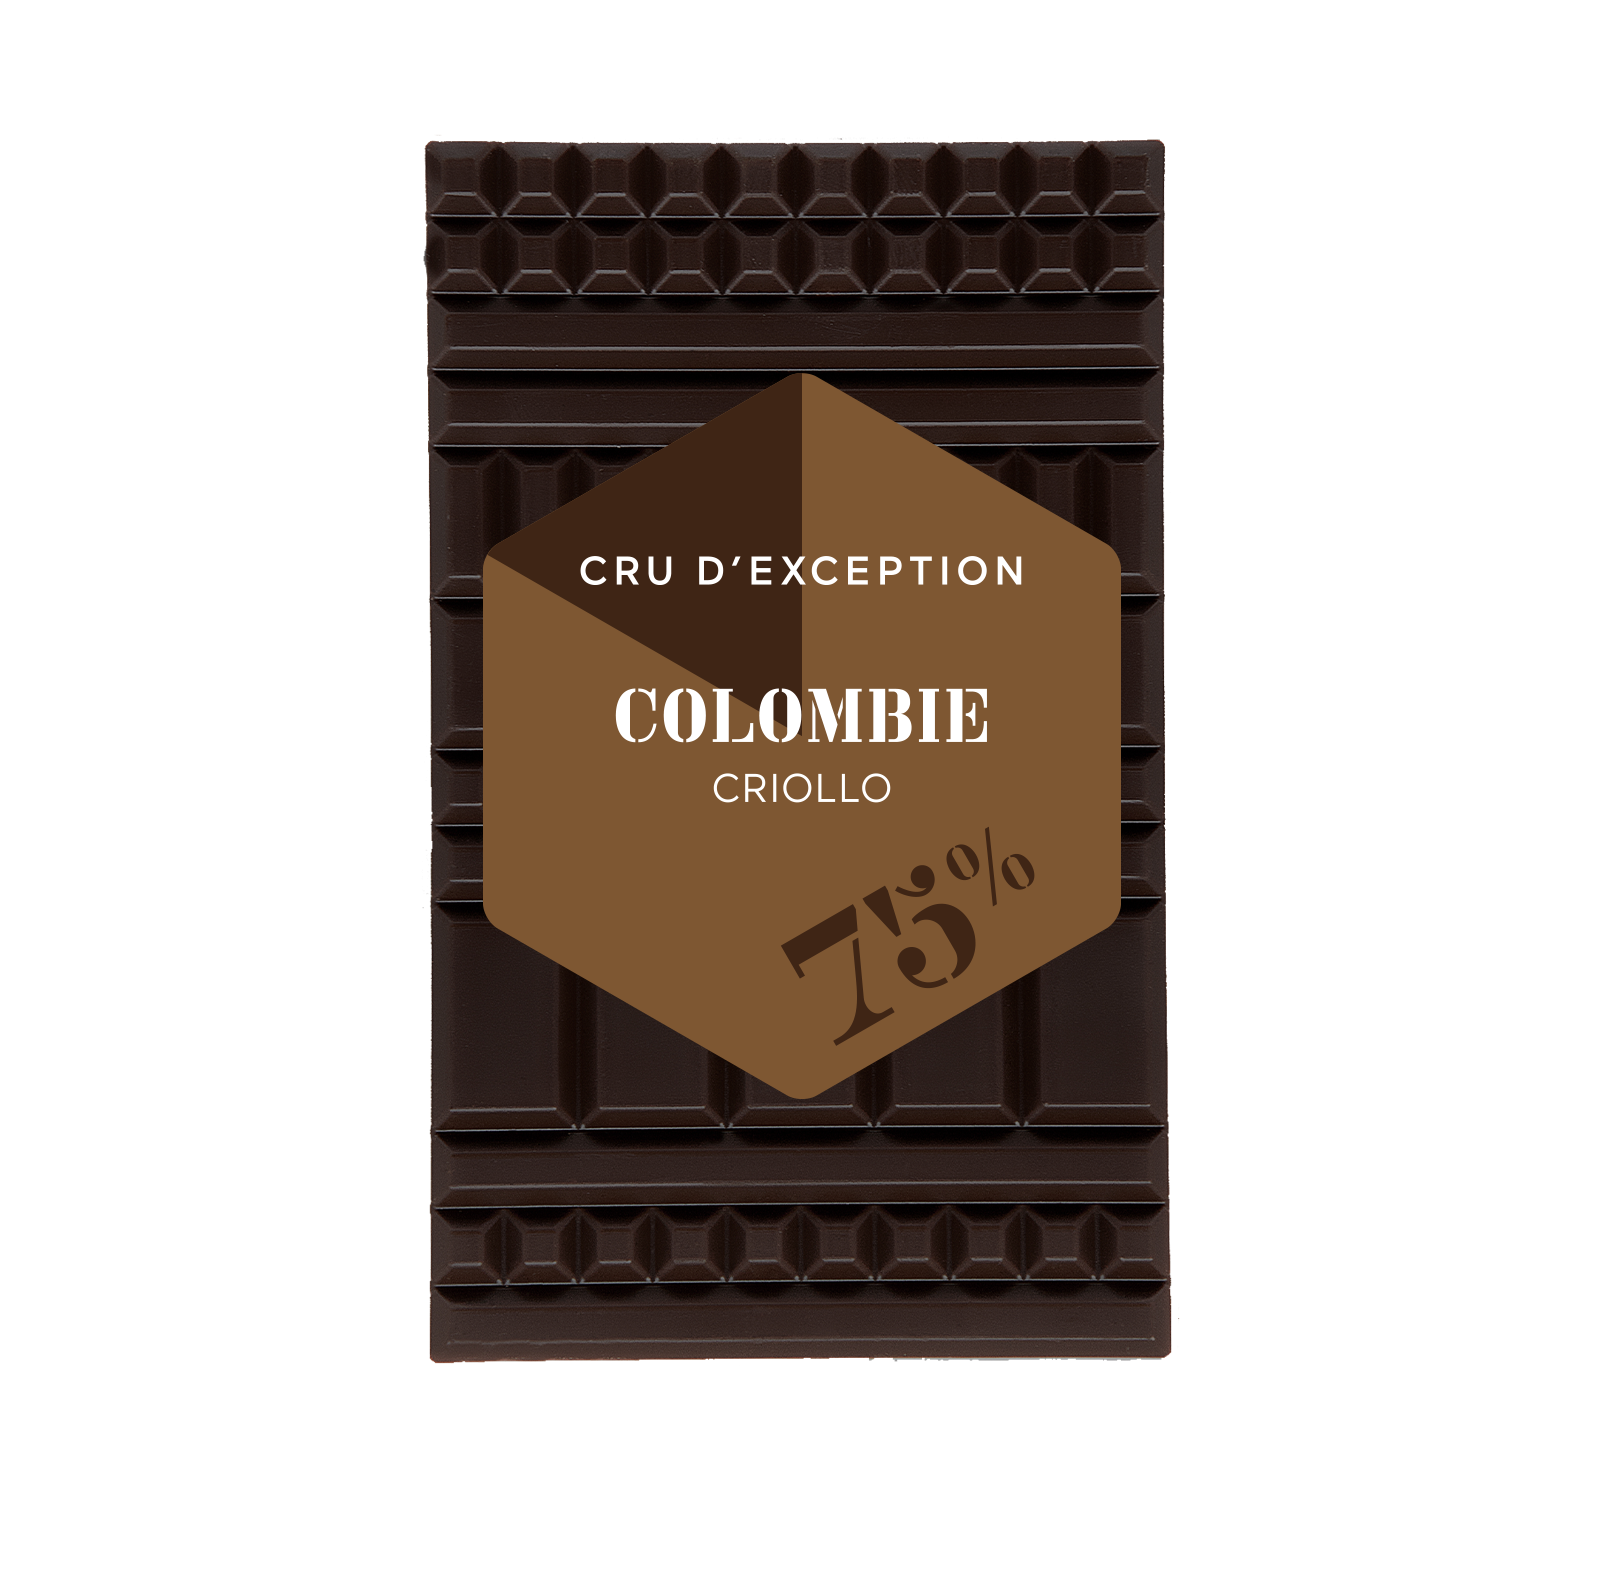 Colombia Criollo